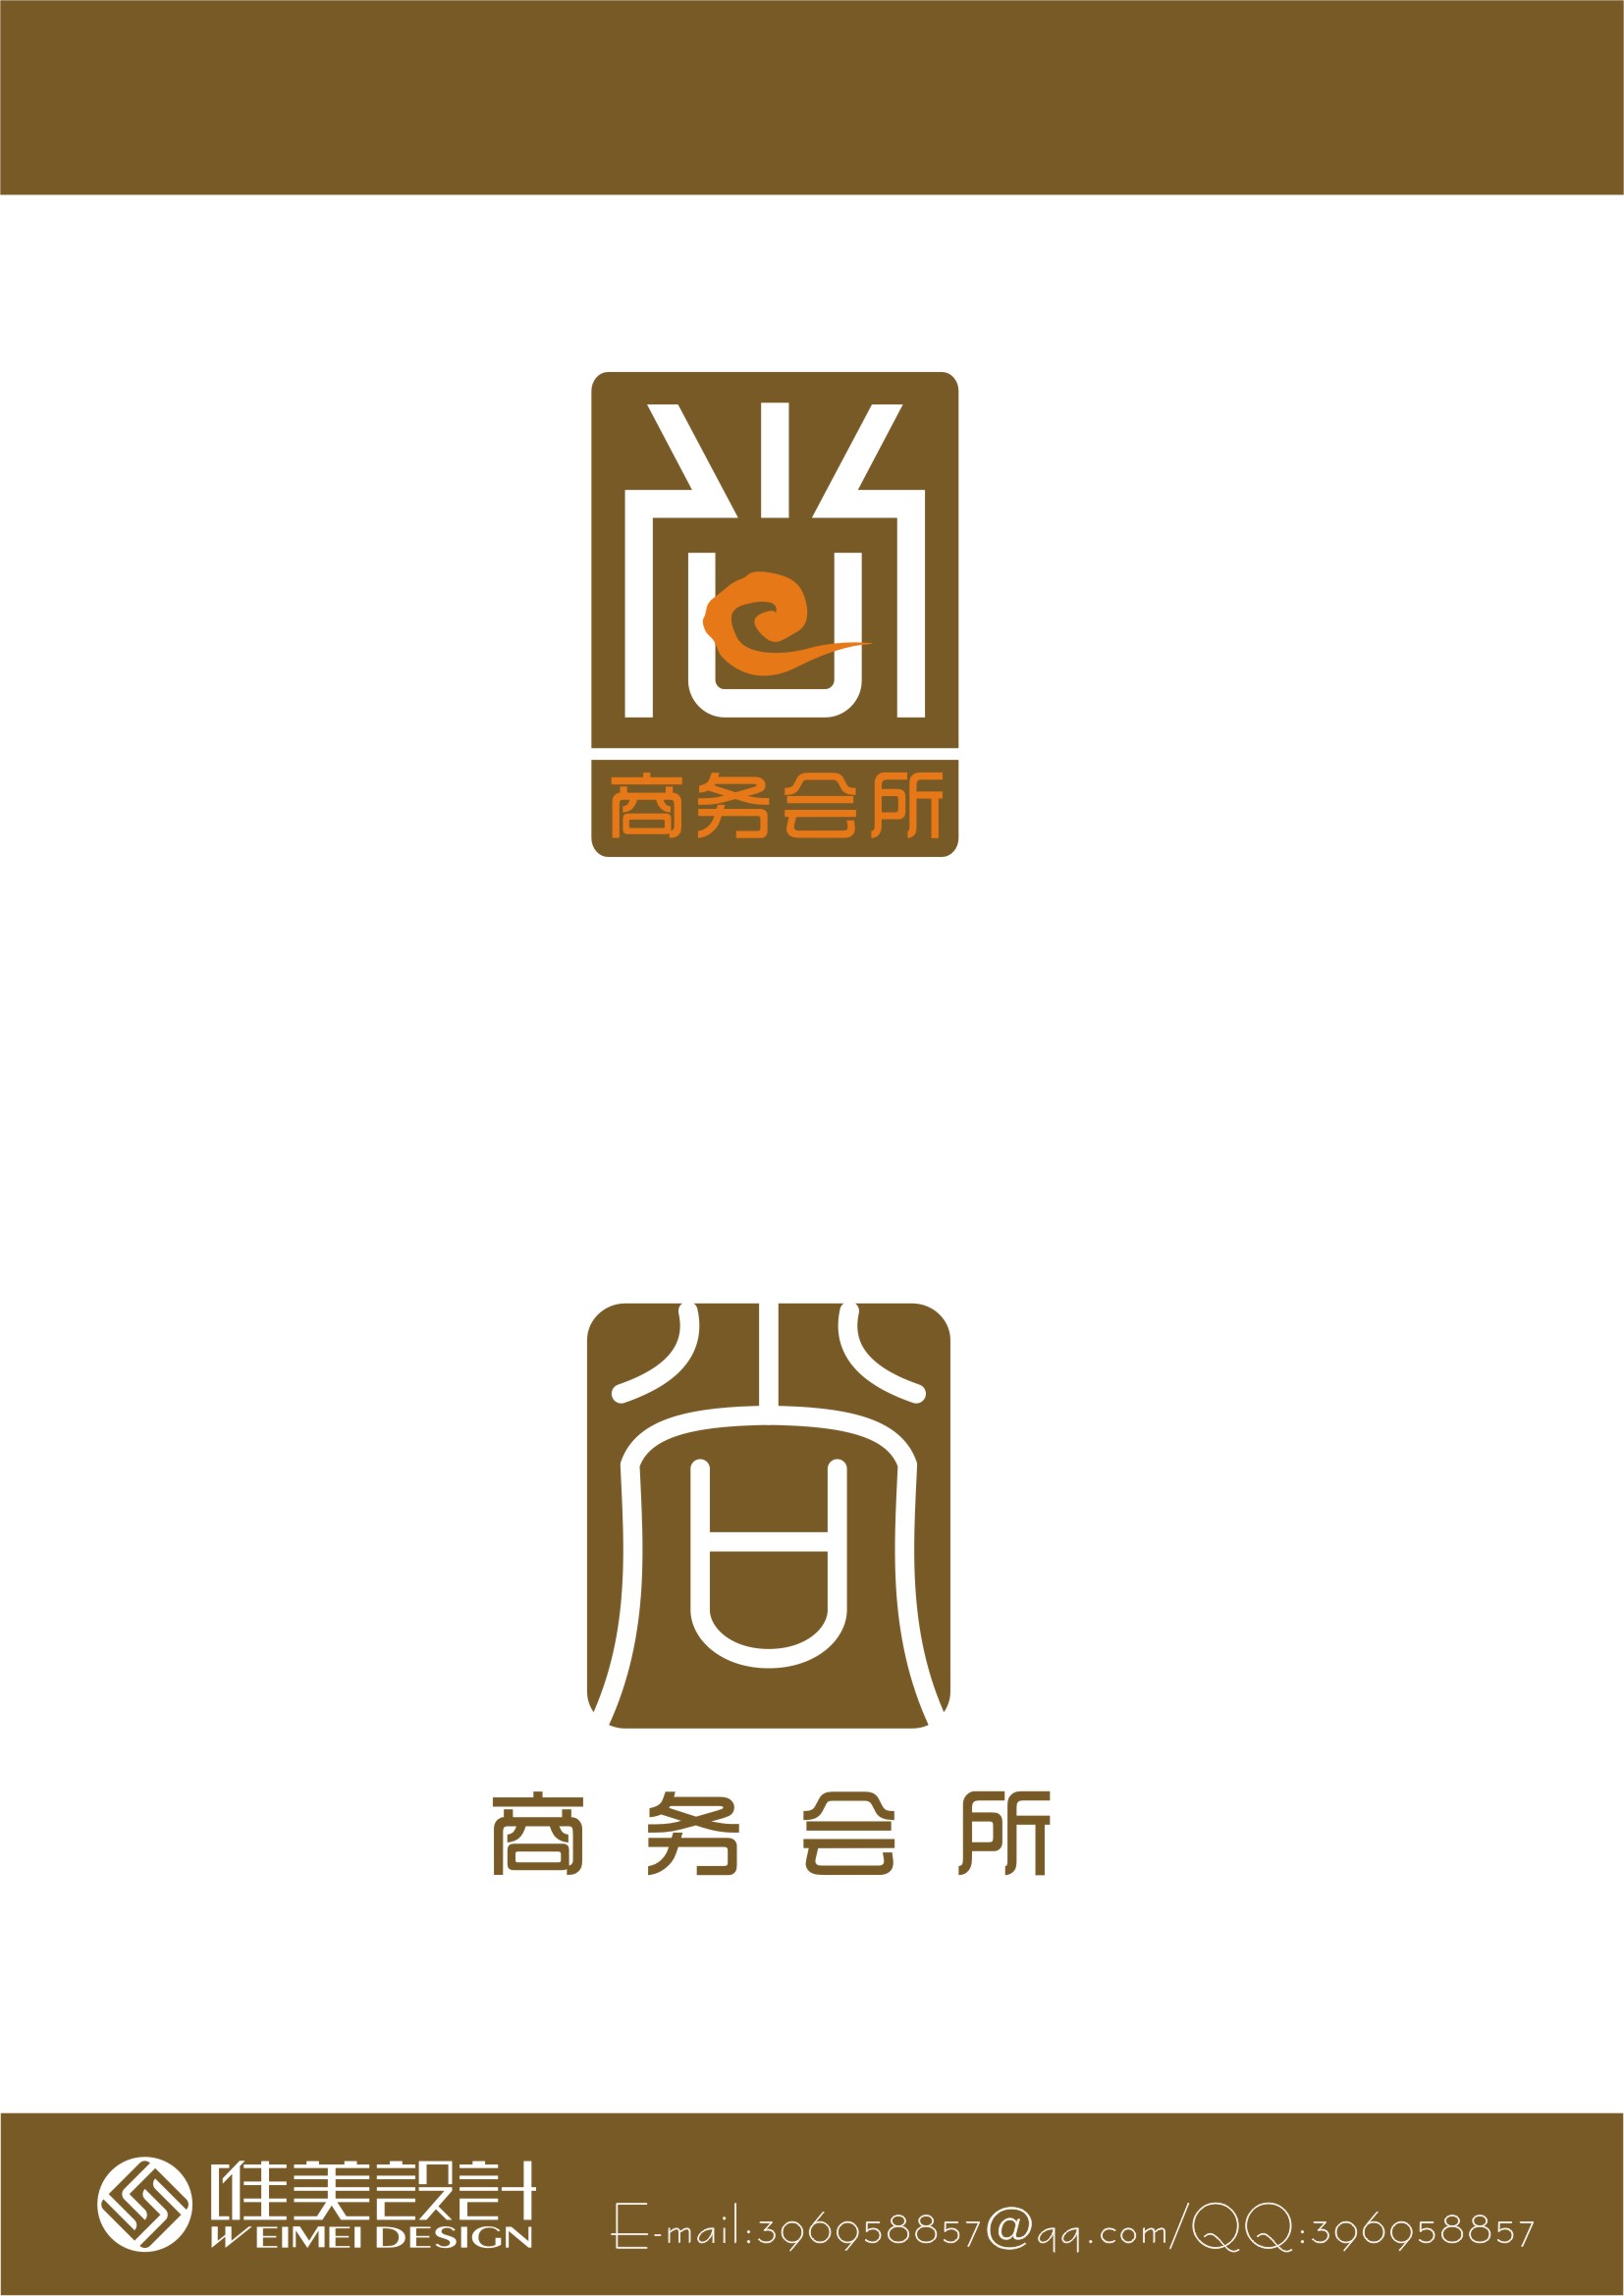 用汉字"上"或"尚"设计一个商务会所的logo